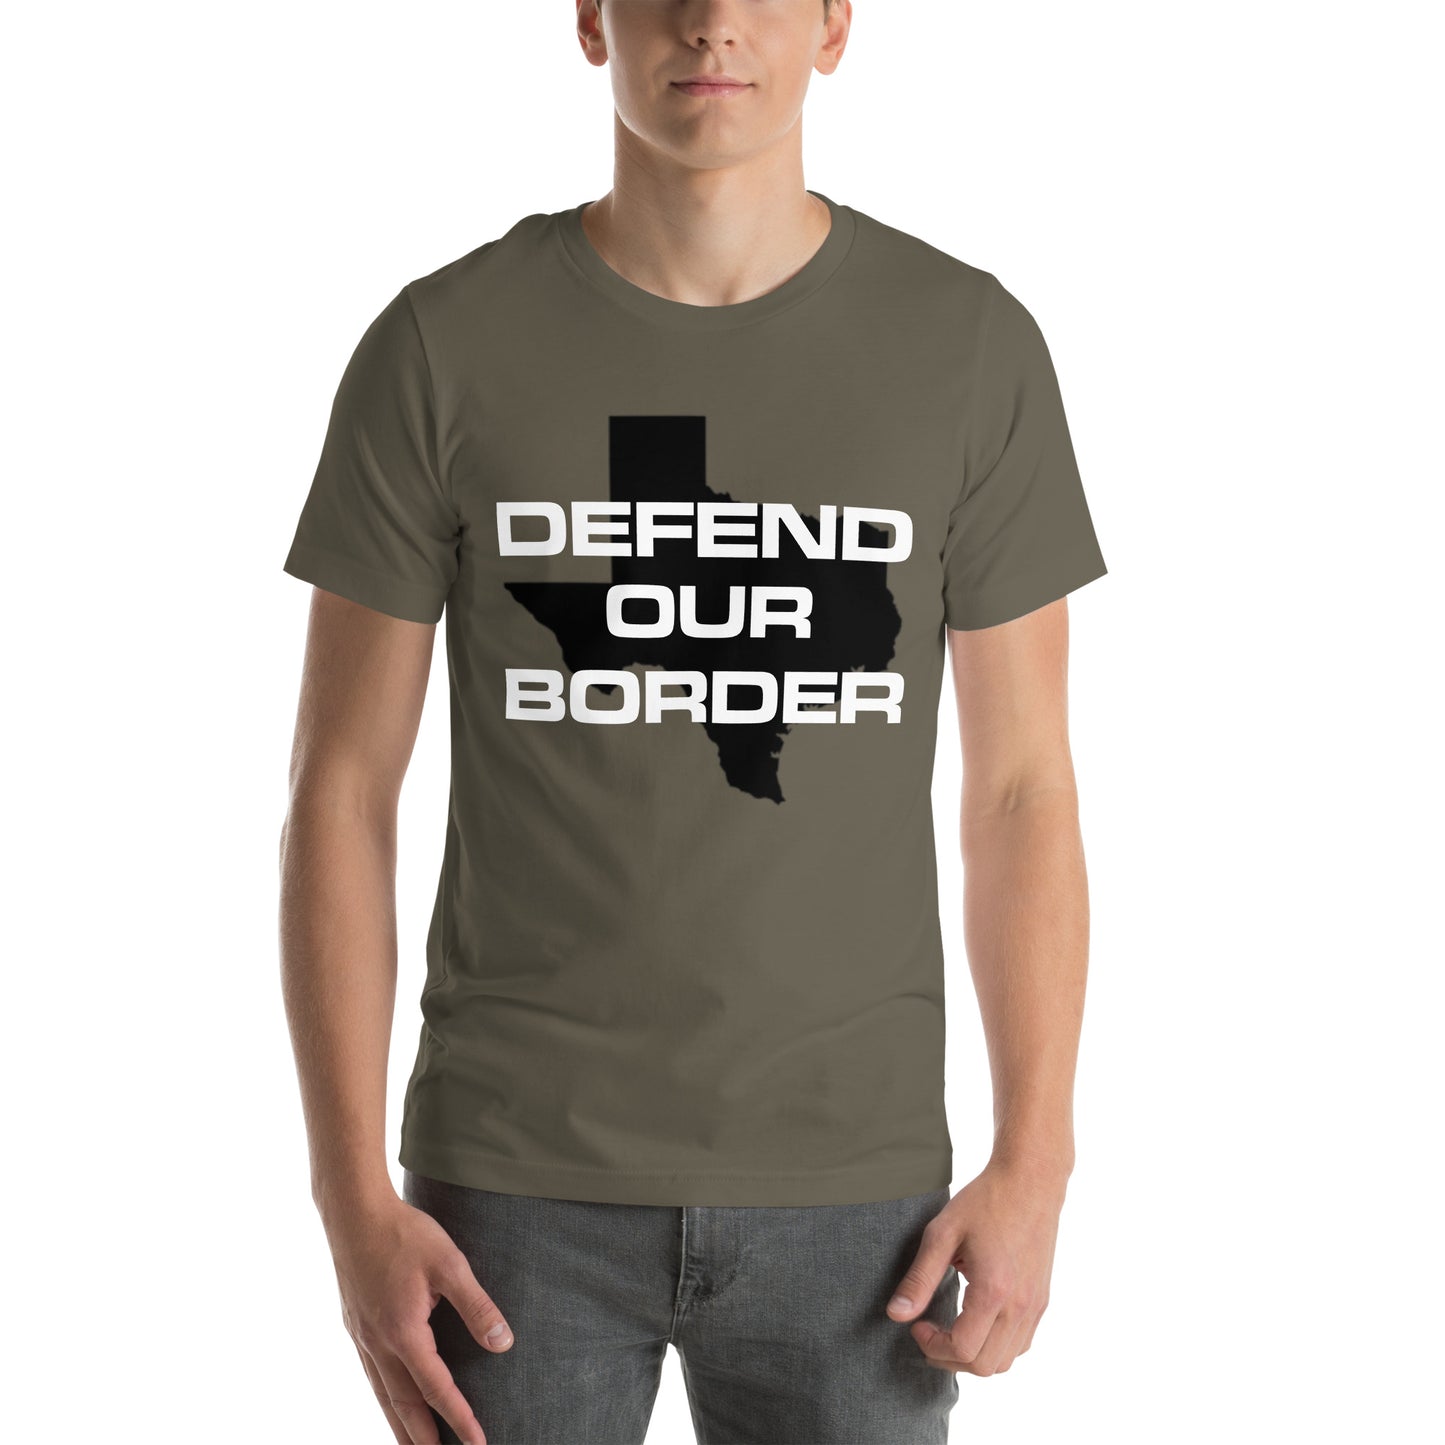 Verteidigen Sie unser Border Texas Rally Unisex-T-Shirt. Zeigen Sie Unterstützung